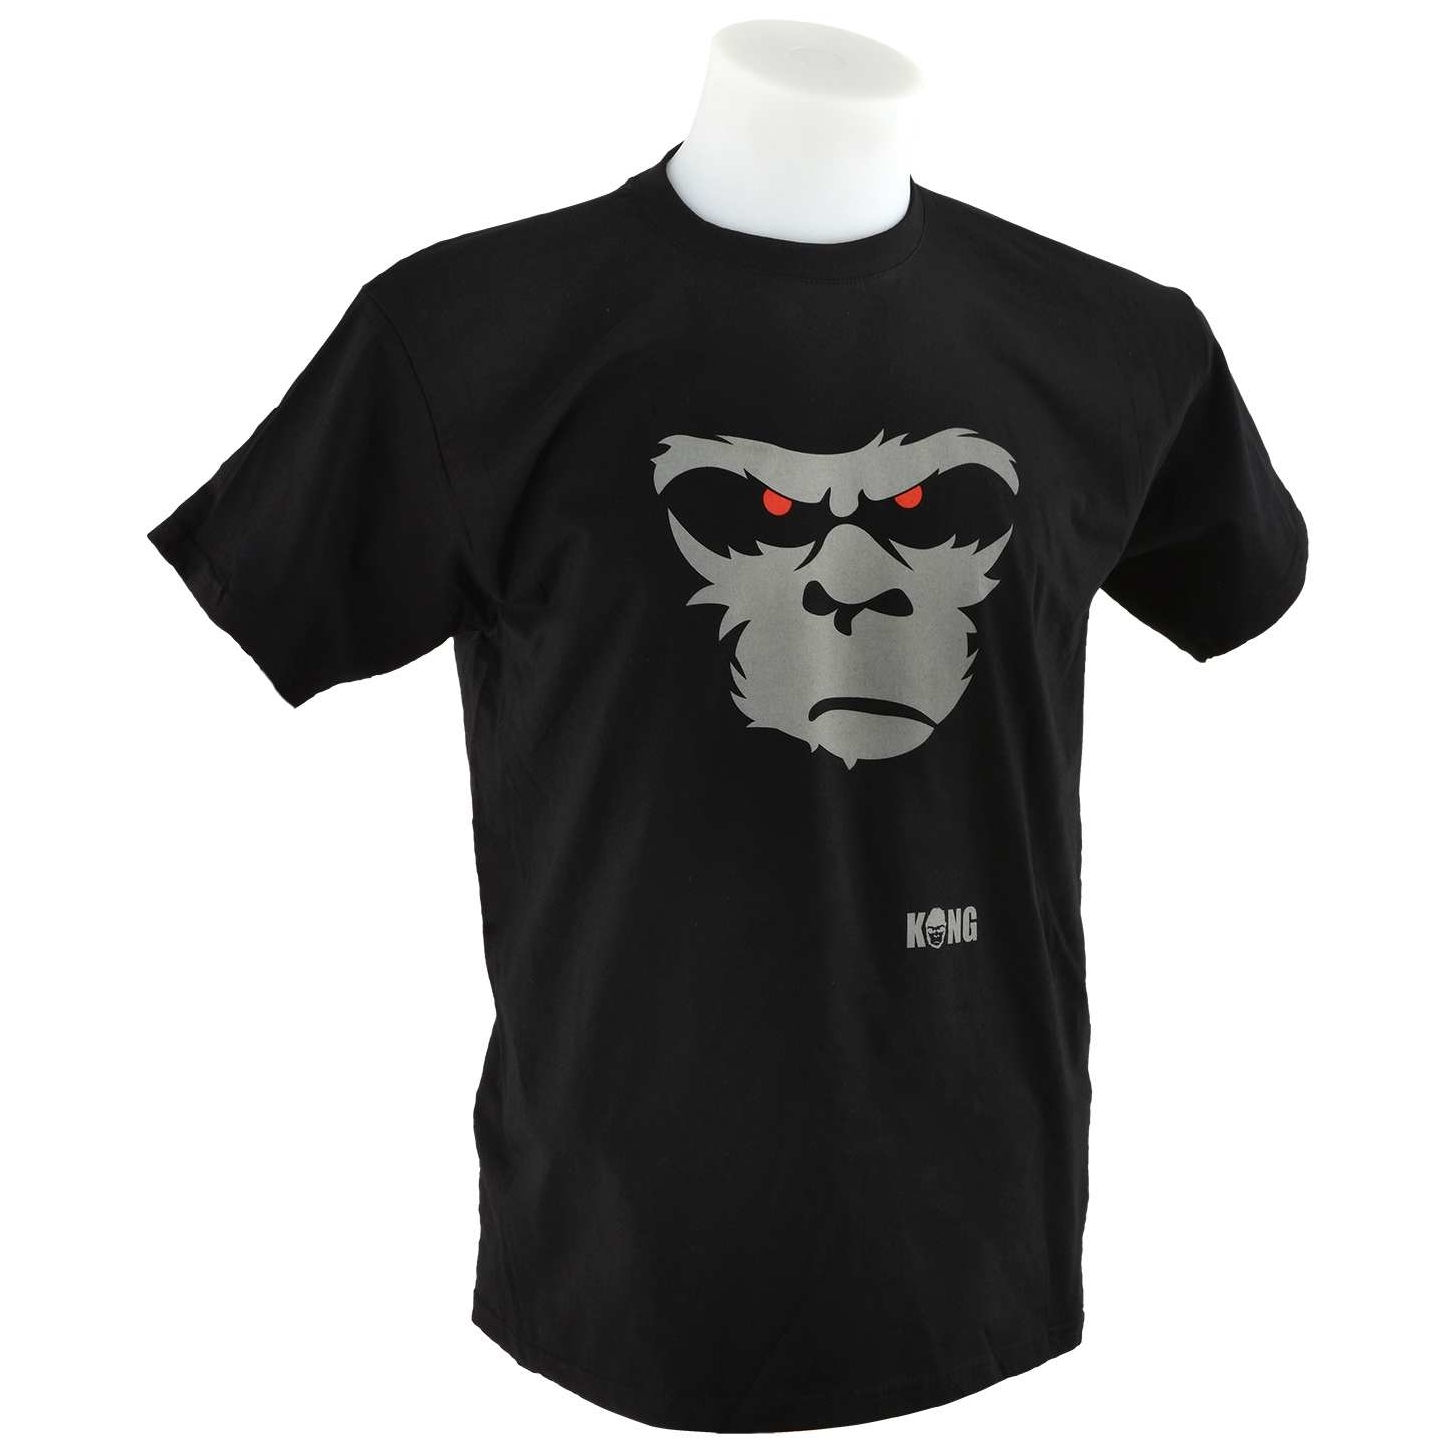 Kong Shirt BLK - L